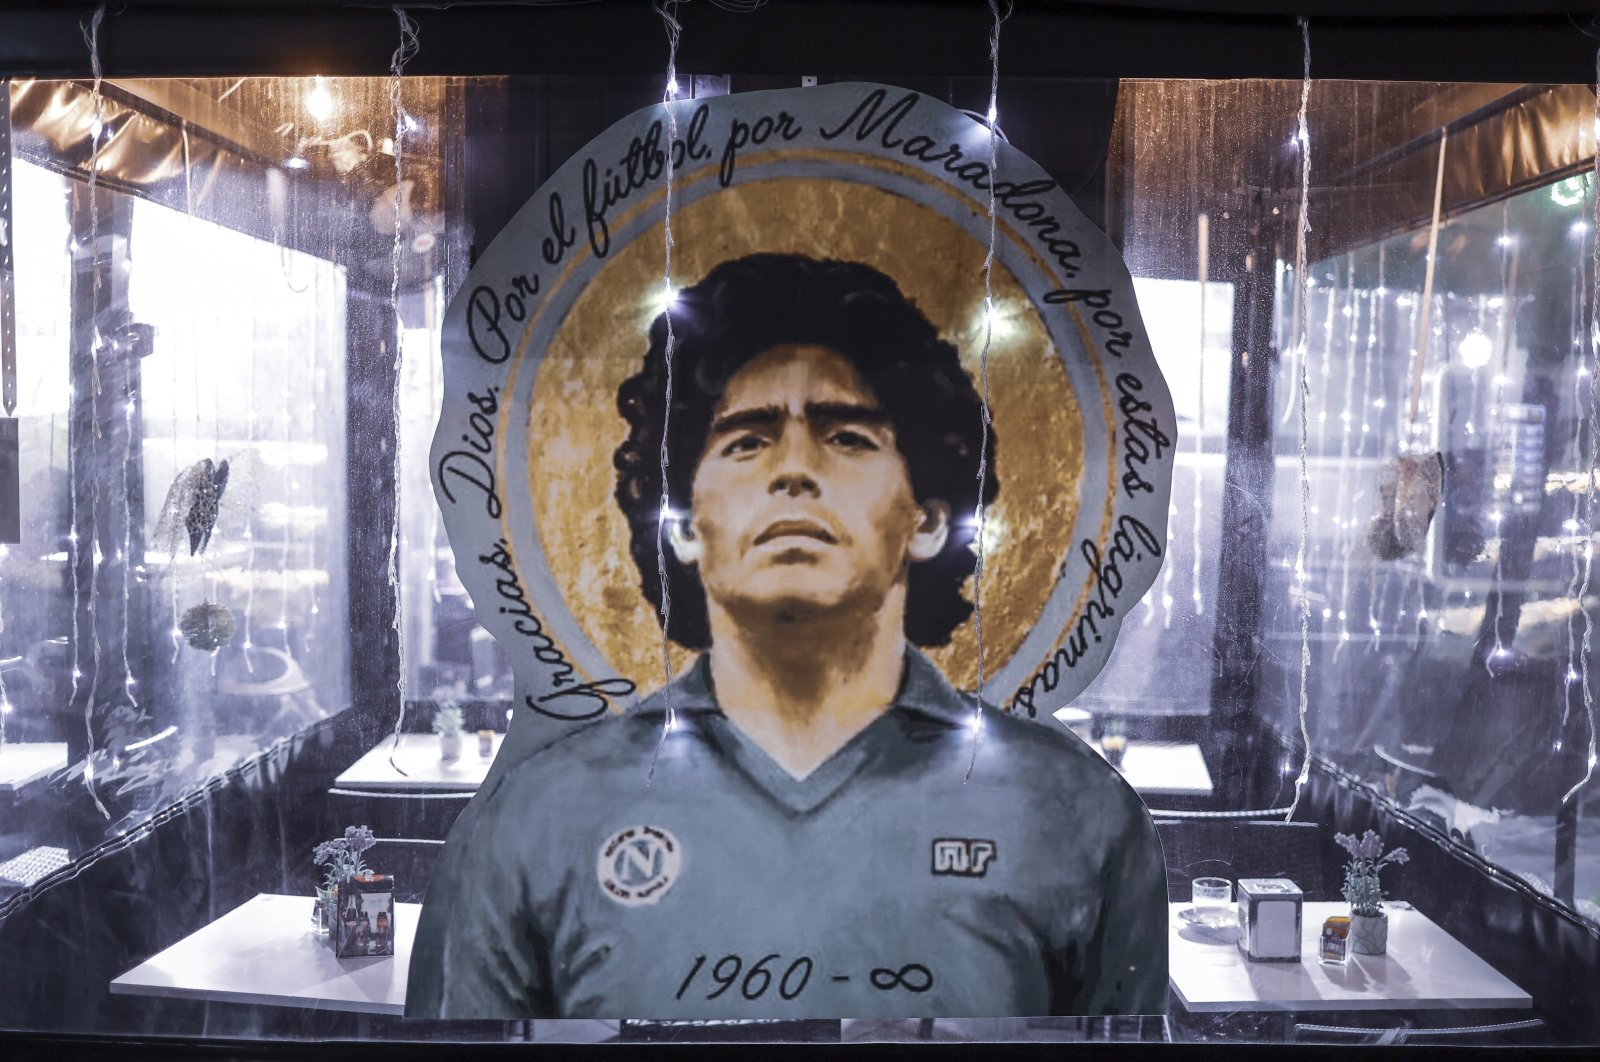 Dunia mengenang ‘Anak Emas’ Maradona pada peringatan 1 tahun kematiannya